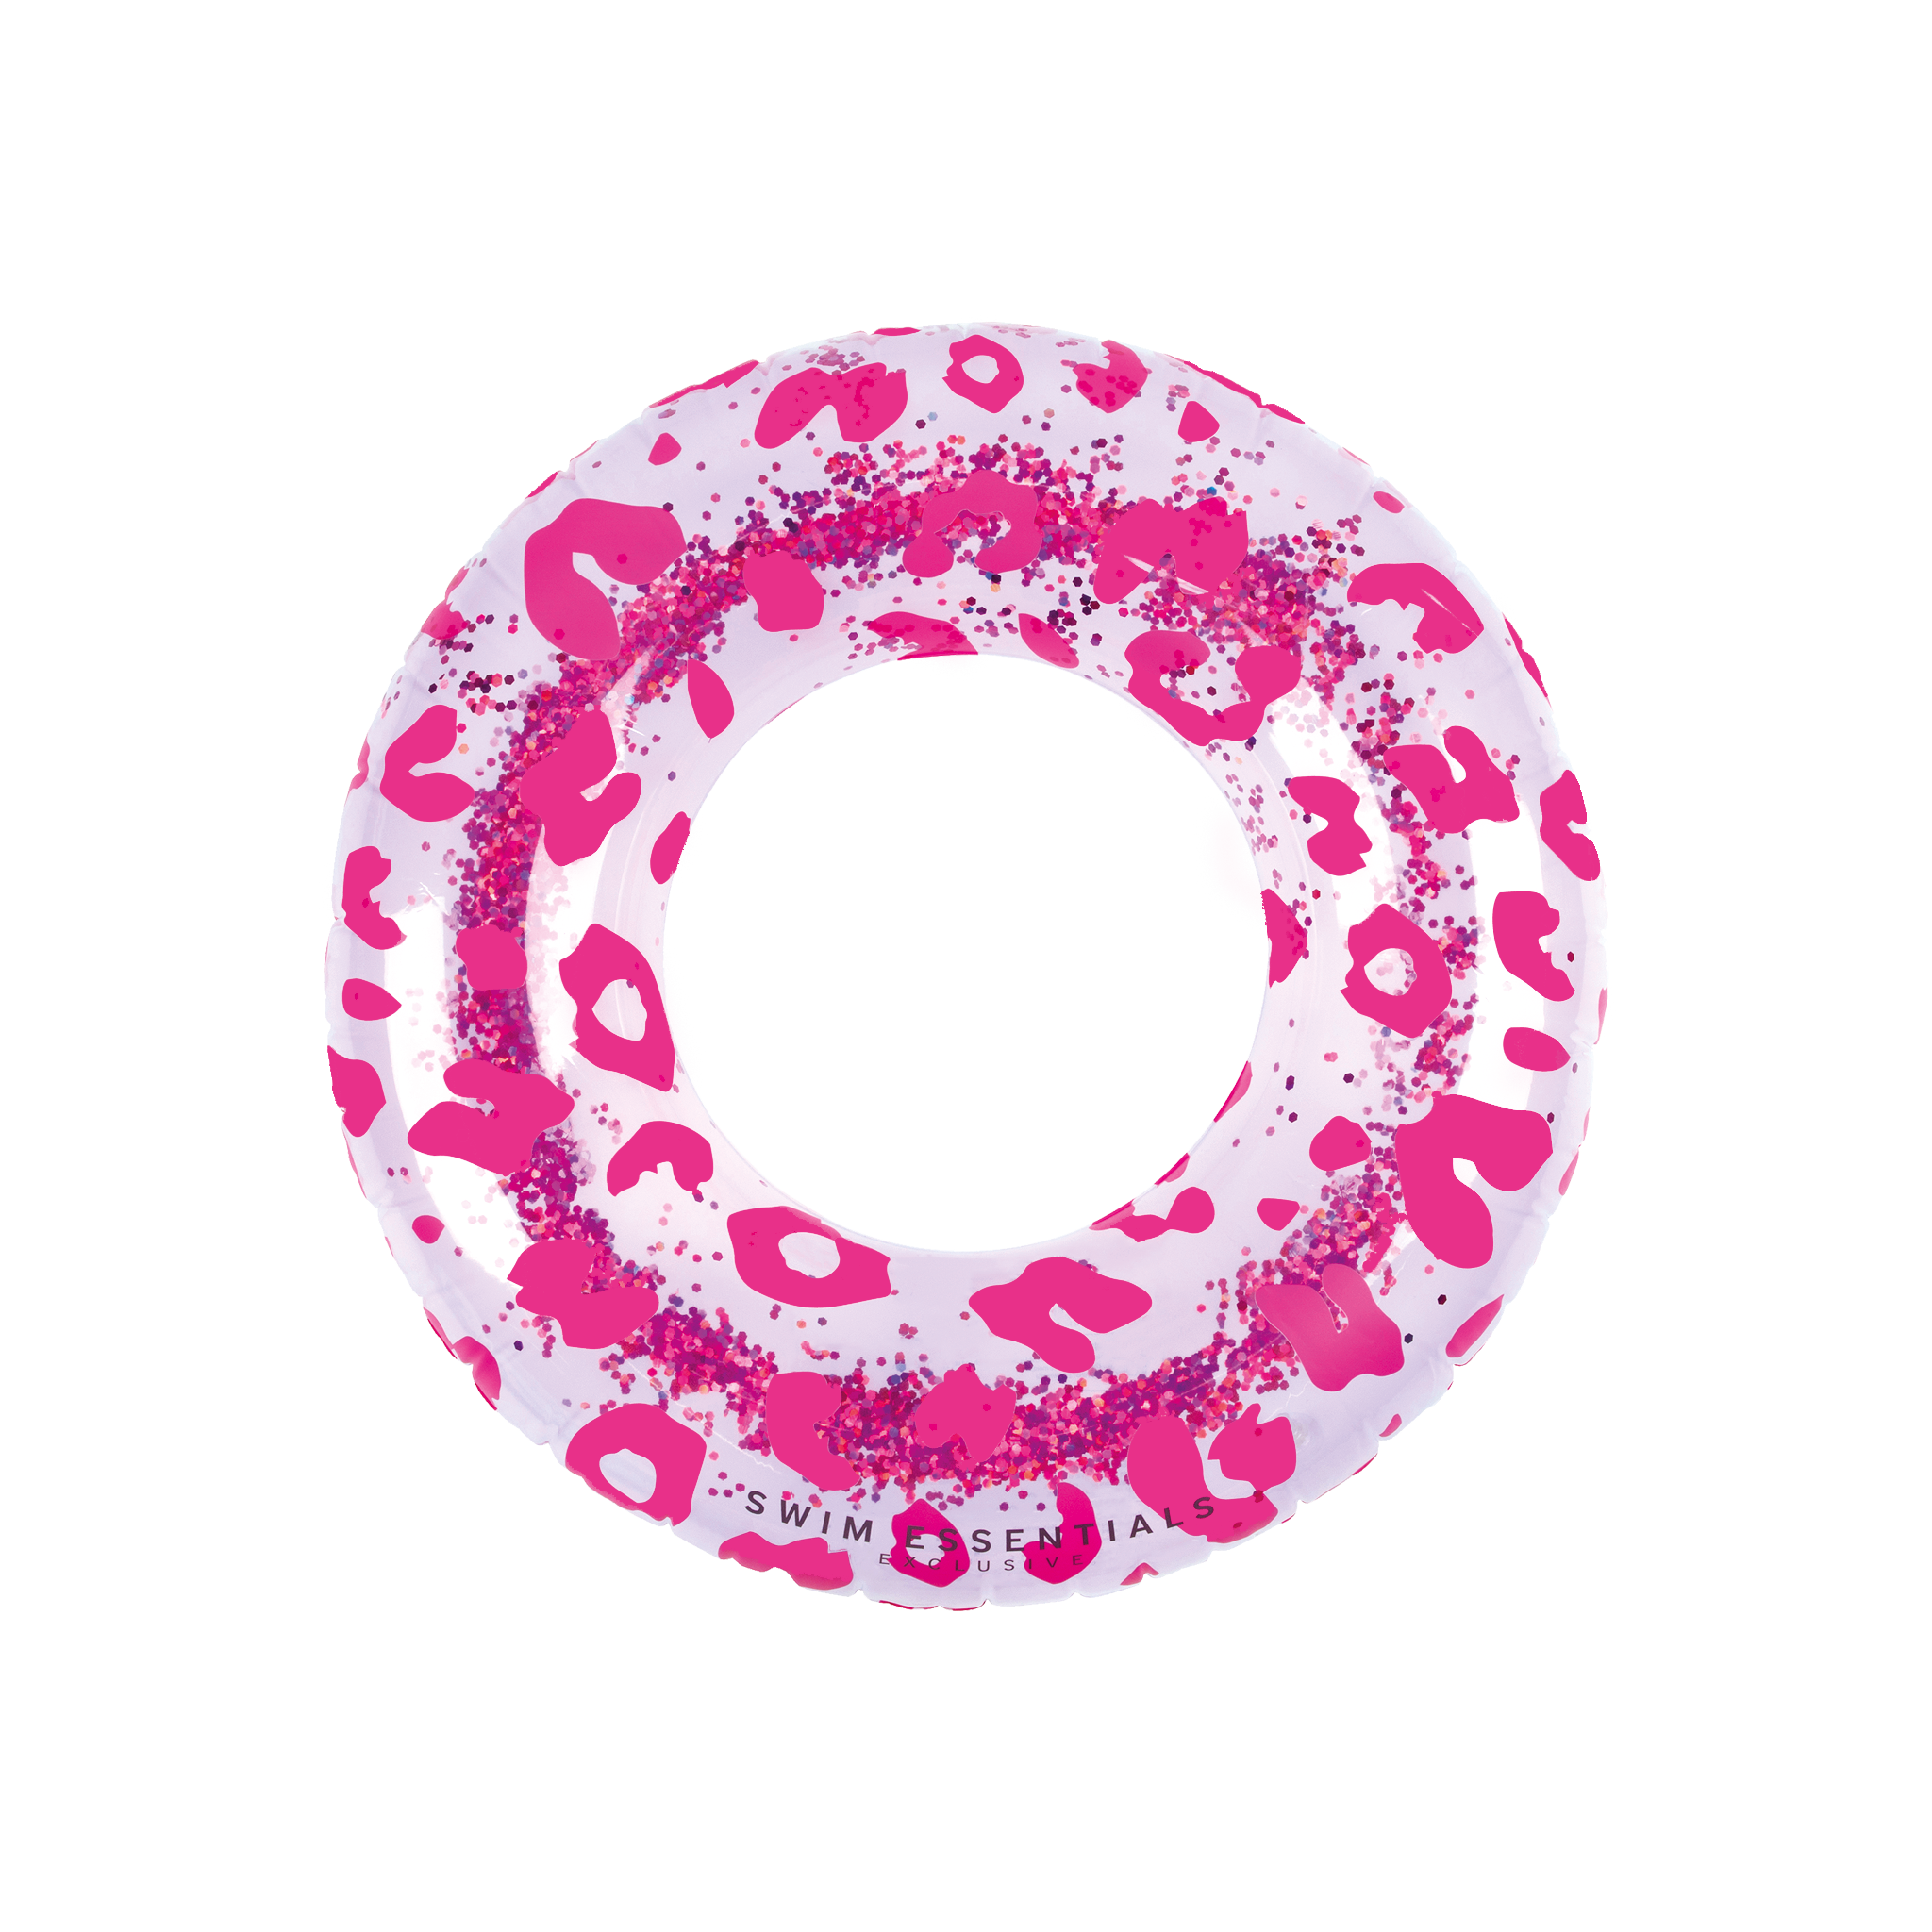 Luxe Zwemband Glitter Roze Panterprint (90cm)